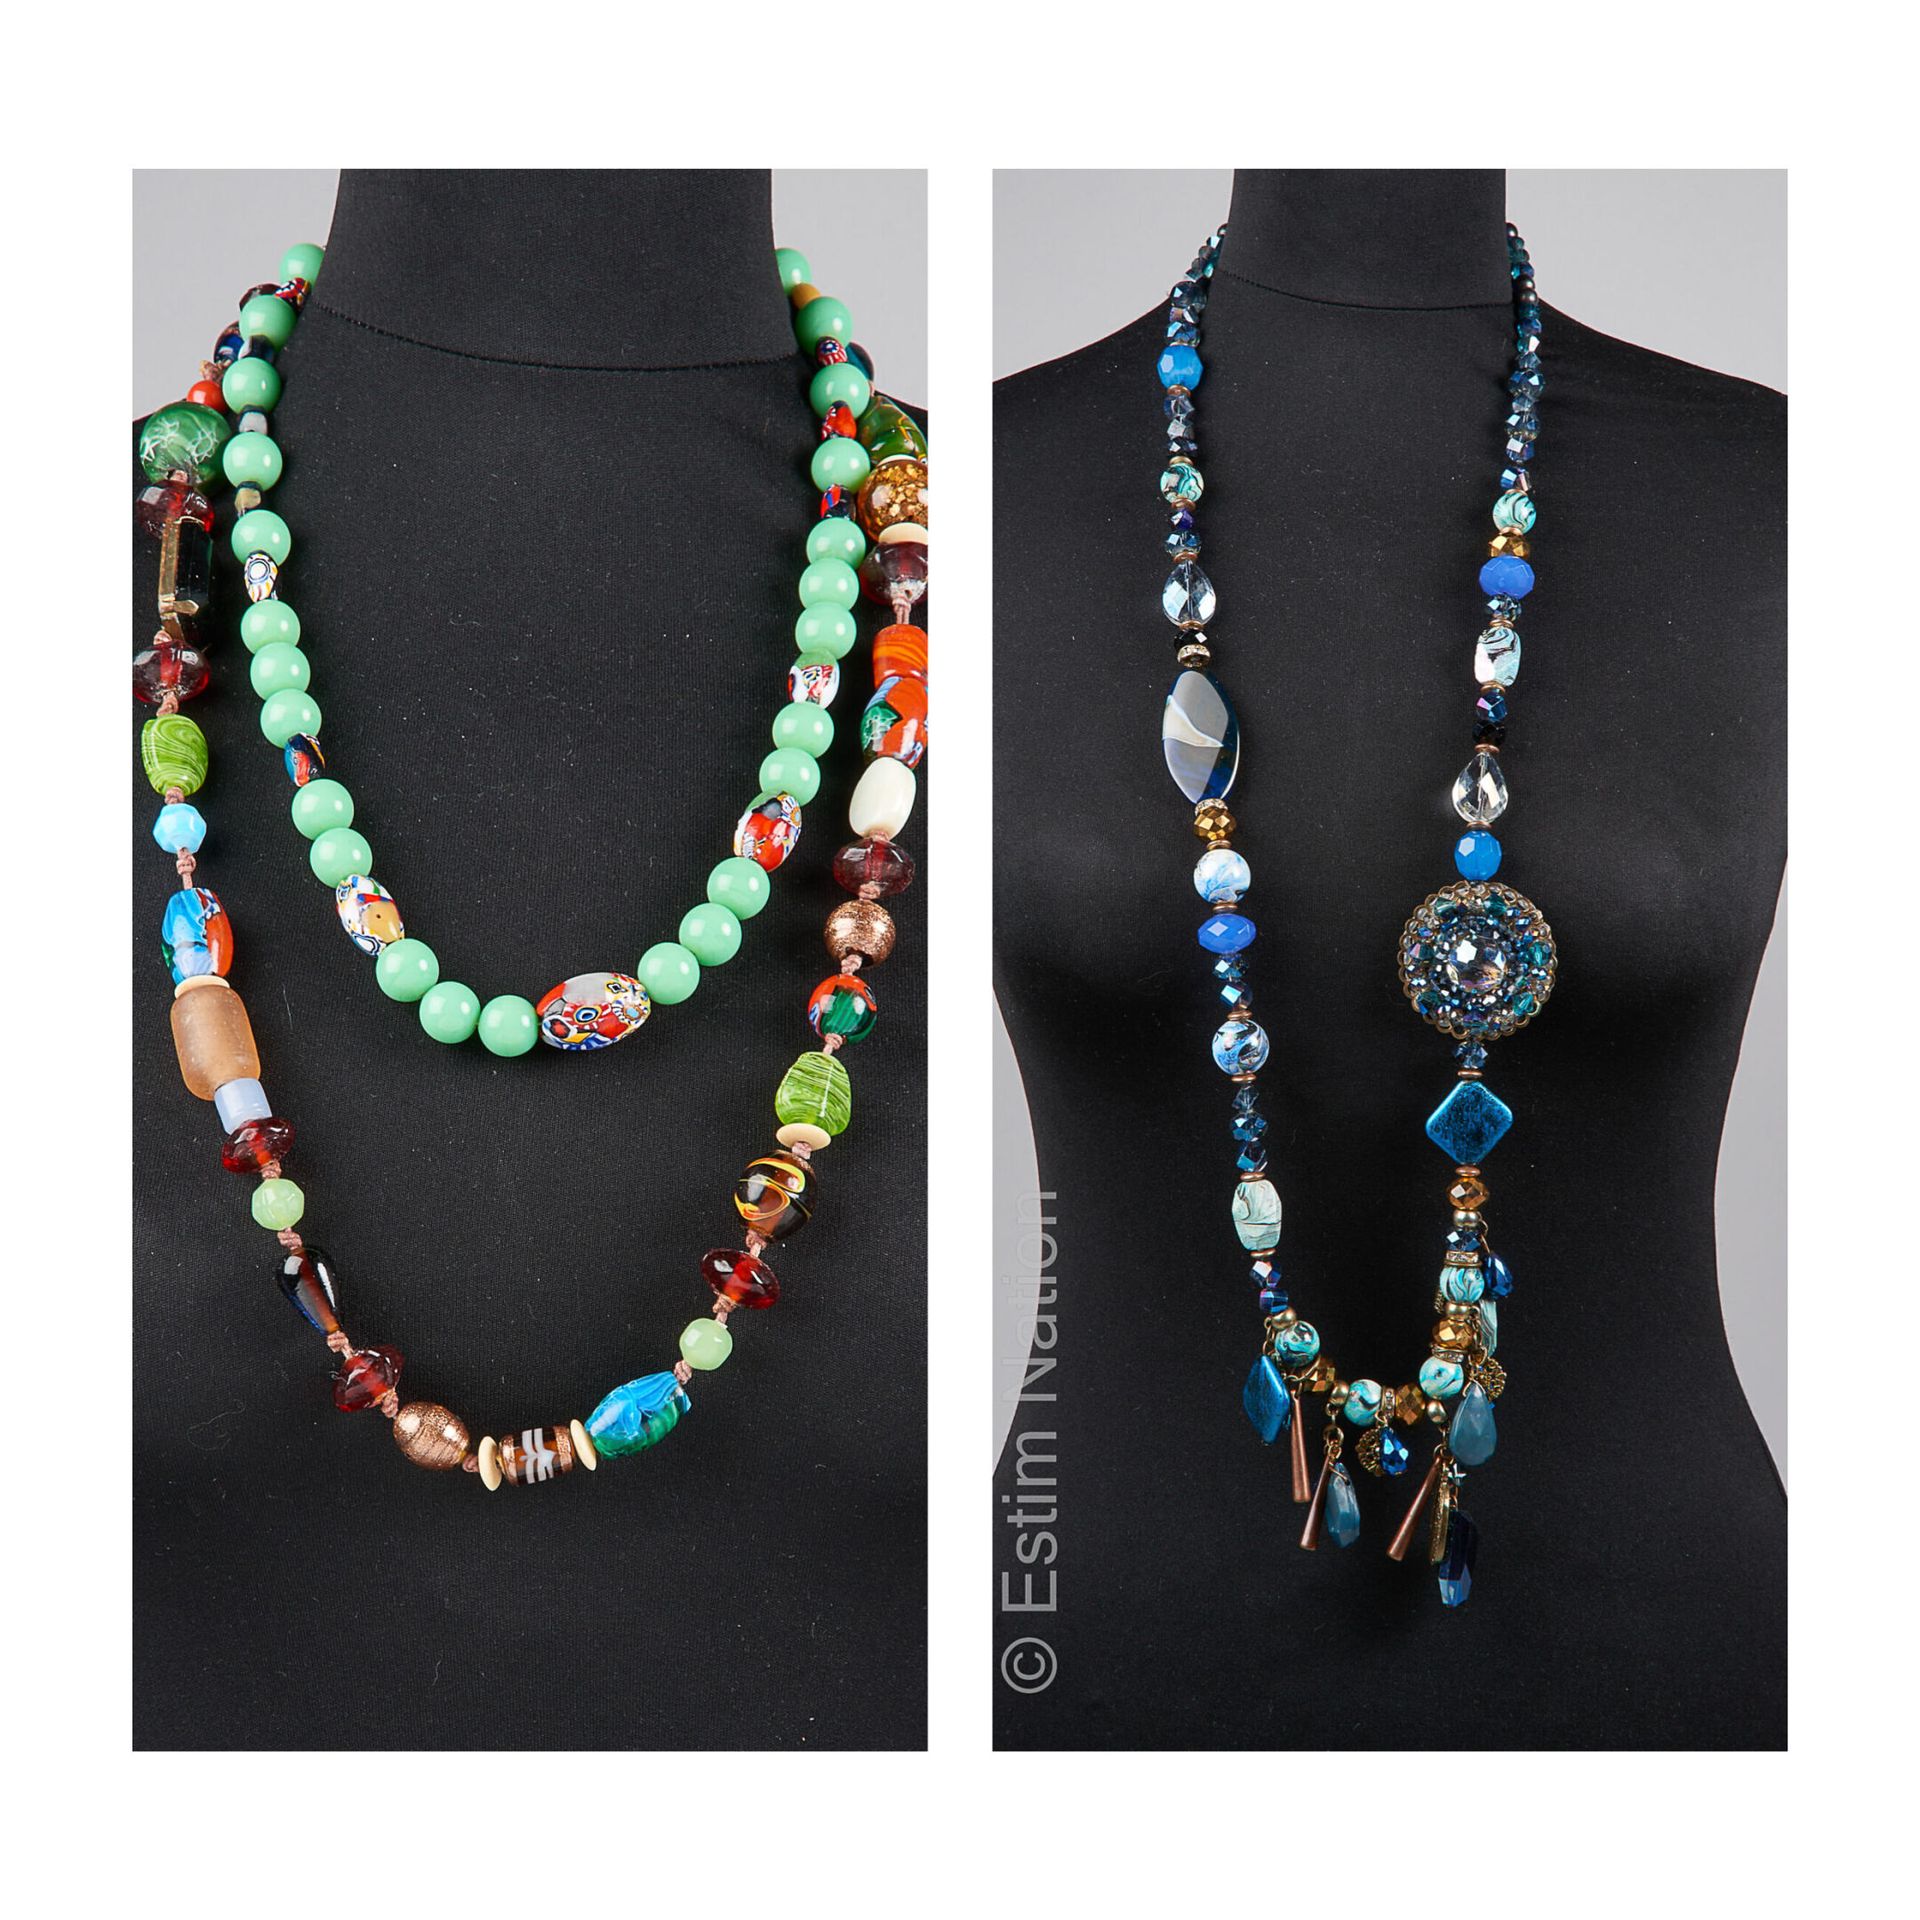 ANONYME 
SAUTOIR in perle di vetro multicolore stile Murano, COLLANA in perle di&hellip;